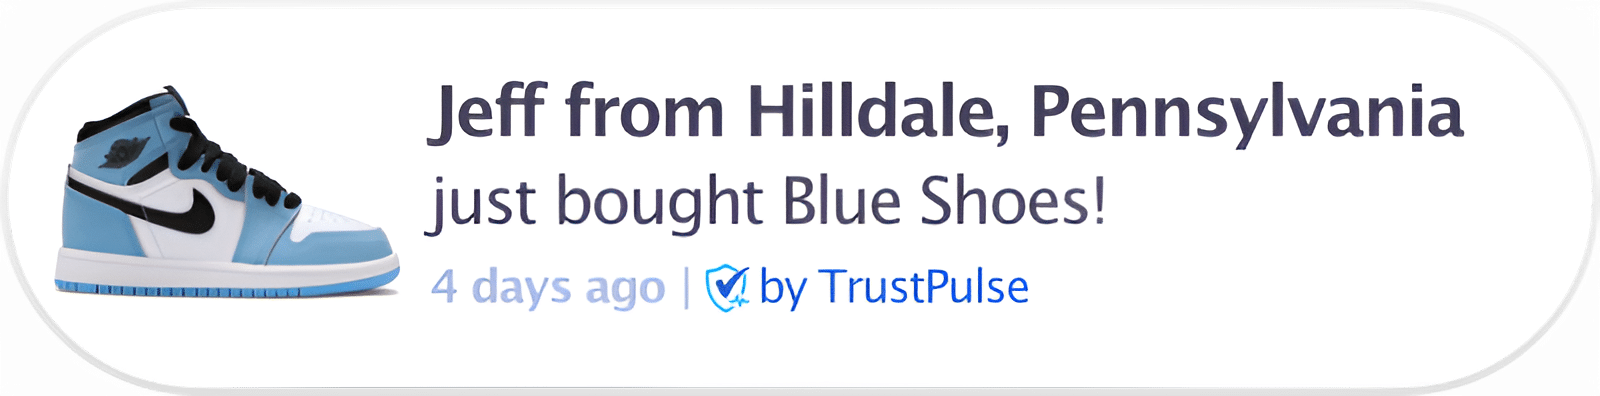 Purchase notification - TrustPulse